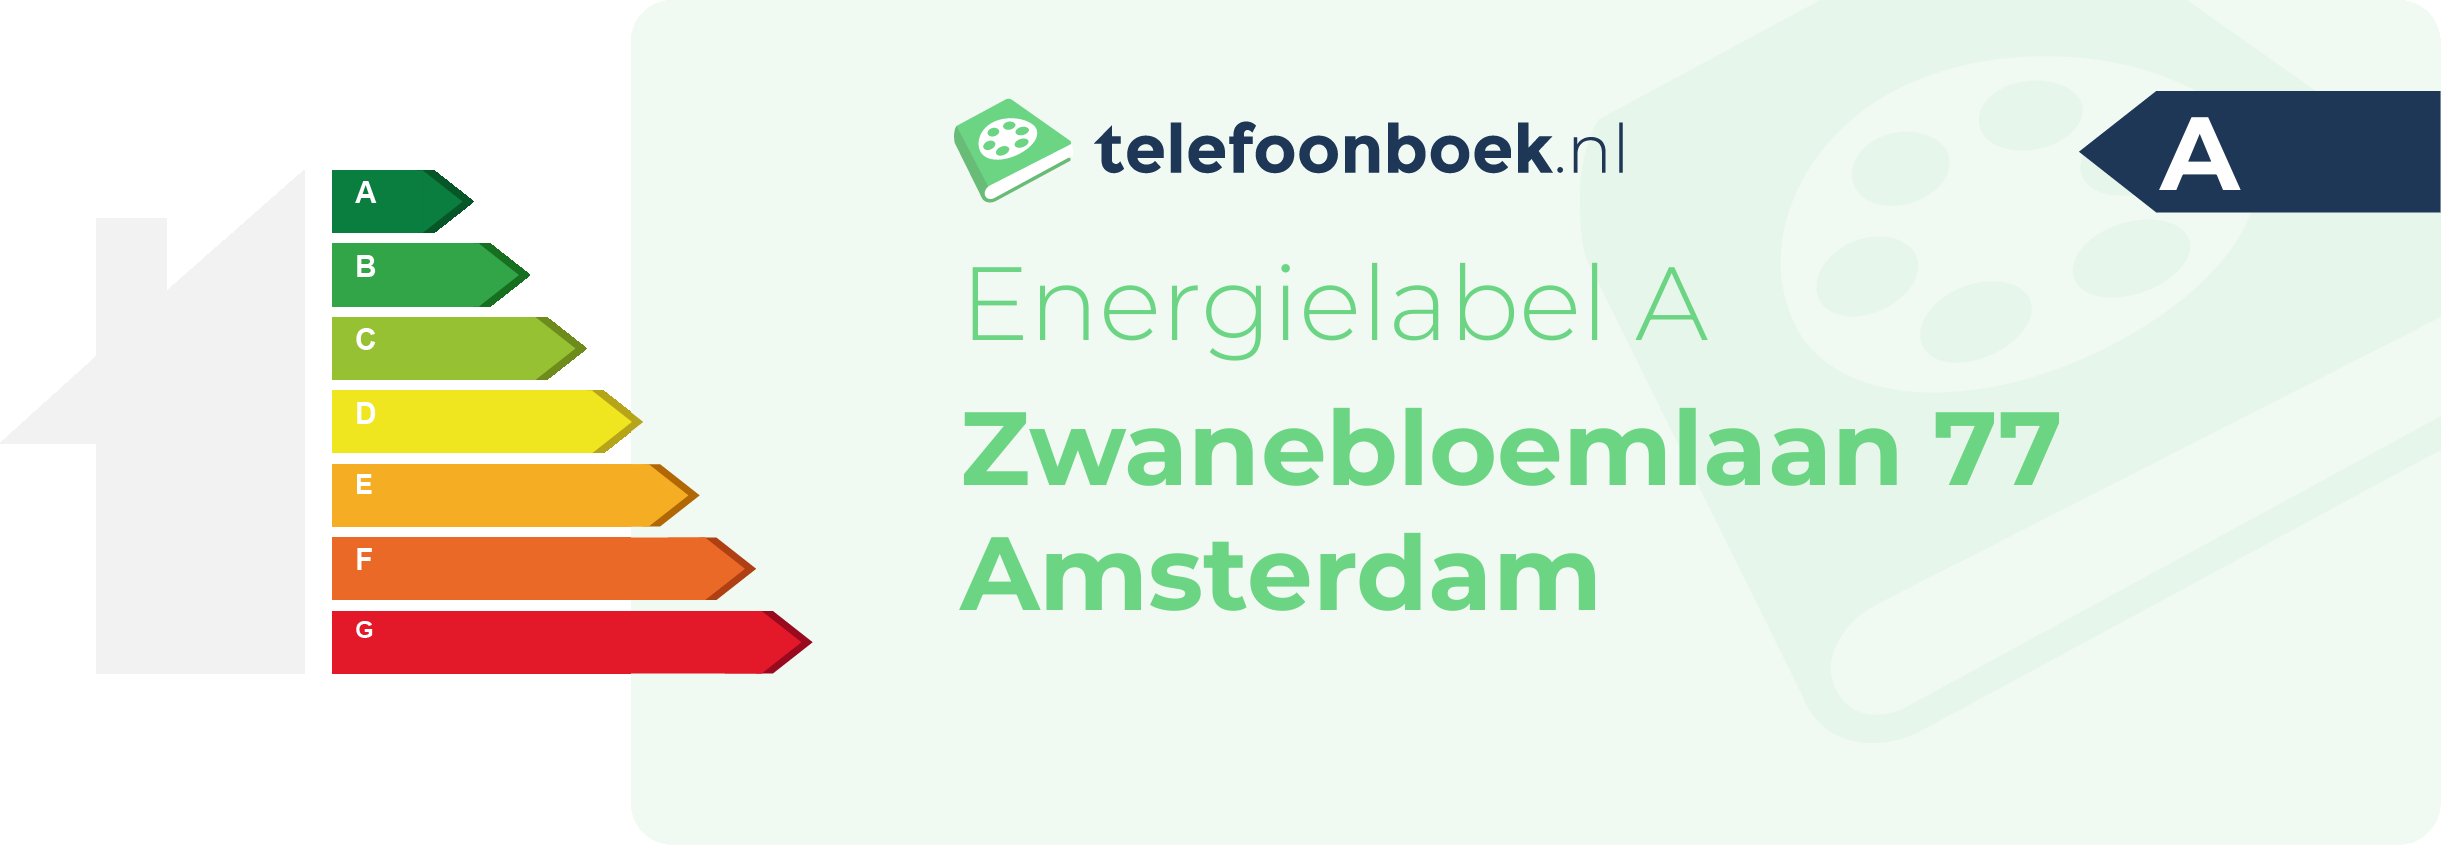 Energielabel Zwanebloemlaan 77 Amsterdam